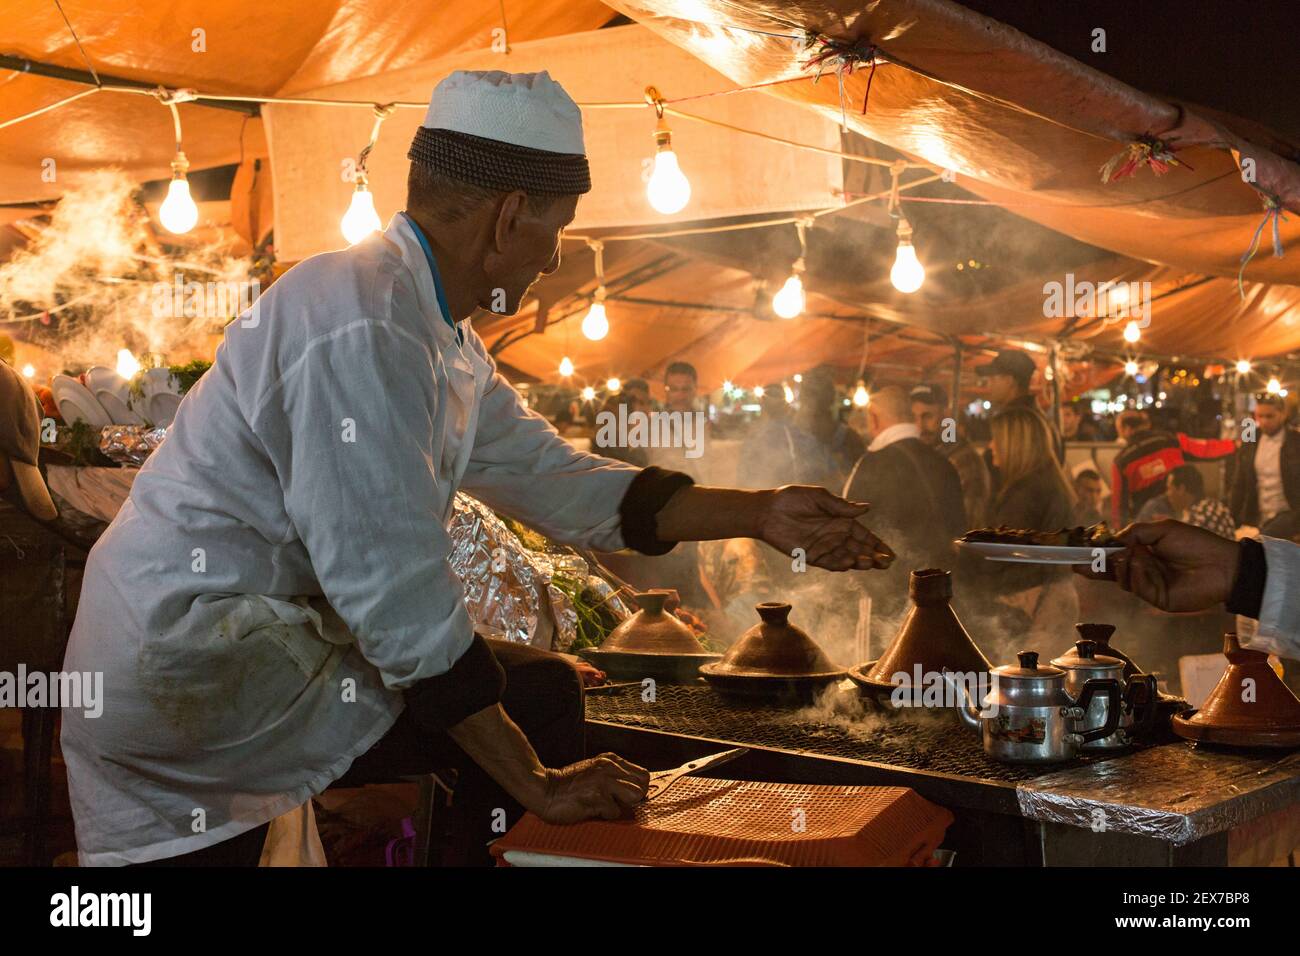 Maroc, Marrakech, stands de nourriture à la place Jemaa el-Fna au crépuscule Banque D'Images